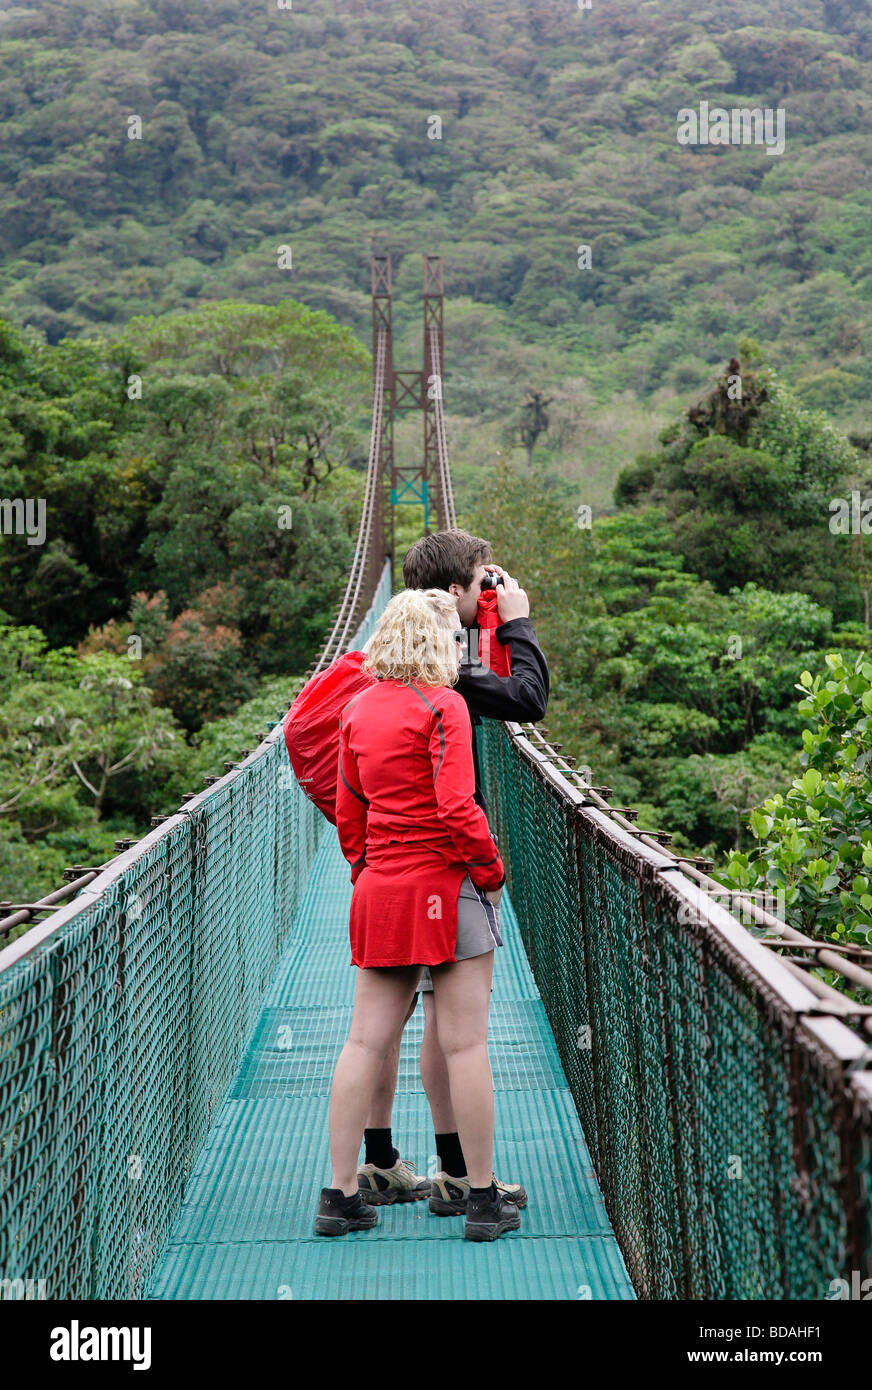 Costa rica monteverde cloud forest national park les randonneurs le long de la forêt tropicale des sky walk l'Amérique latine Banque D'Images